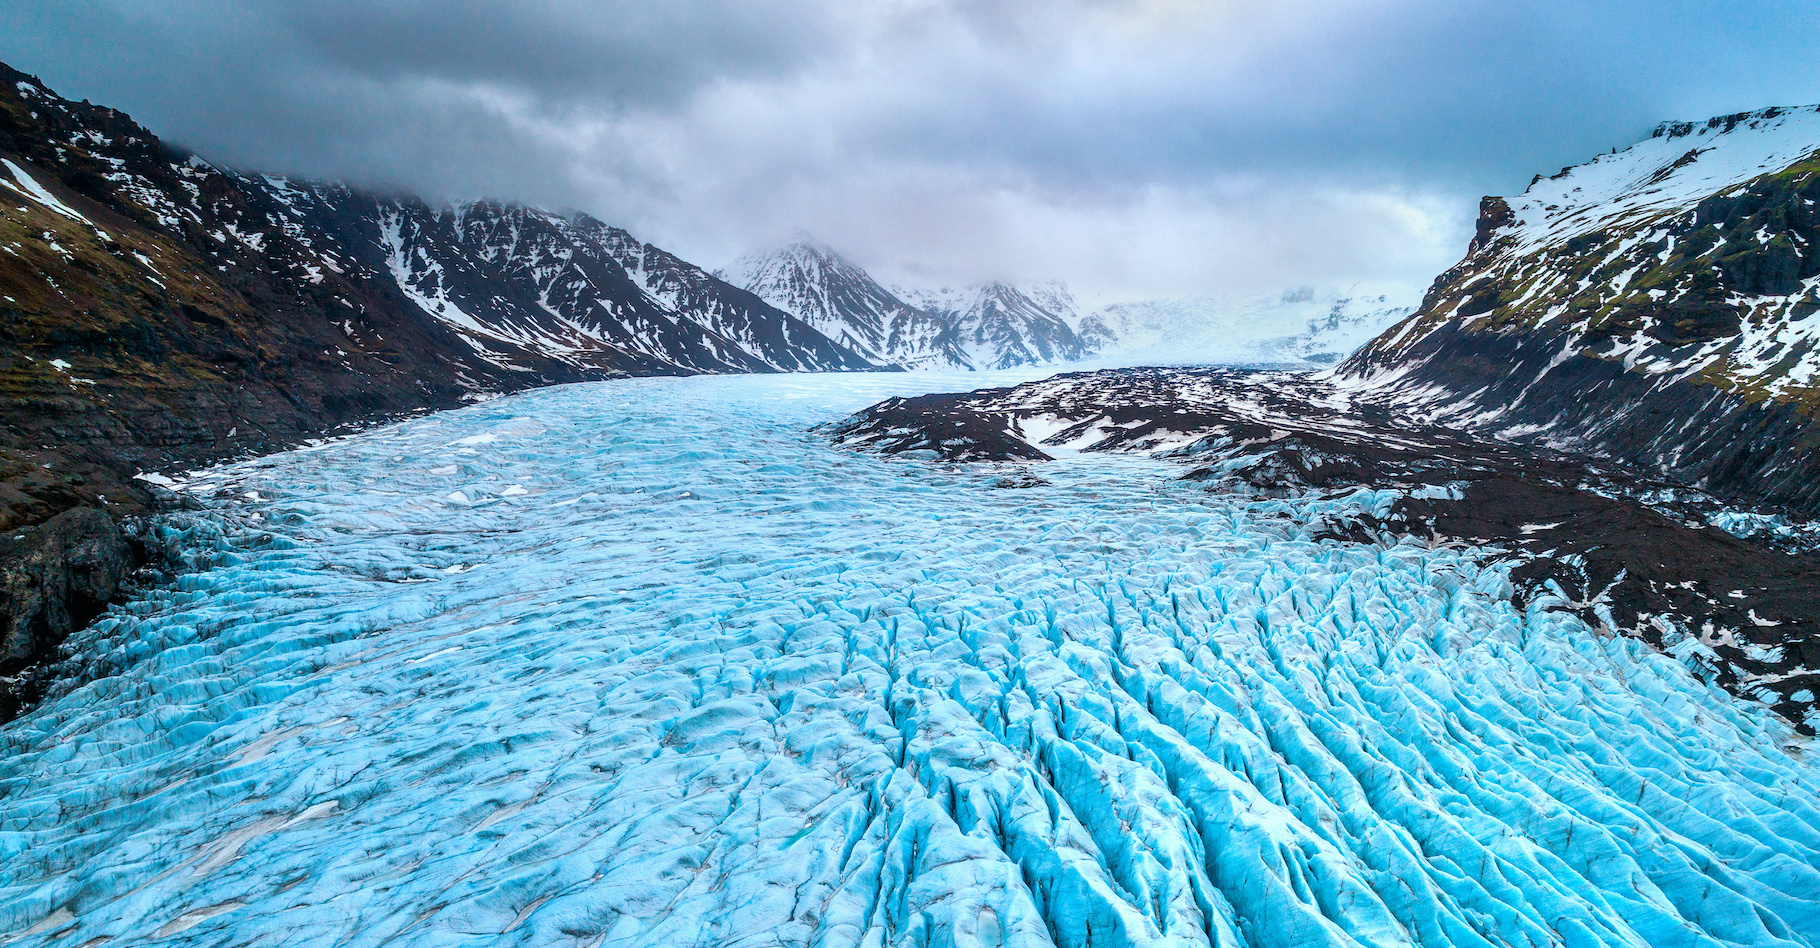 La découverte des mécanismes participant à la fonte des glaciers suggère que les projections de la hausse du niveau des mers est largement sous-estimée. © tawatchai1990, Adobe Stock